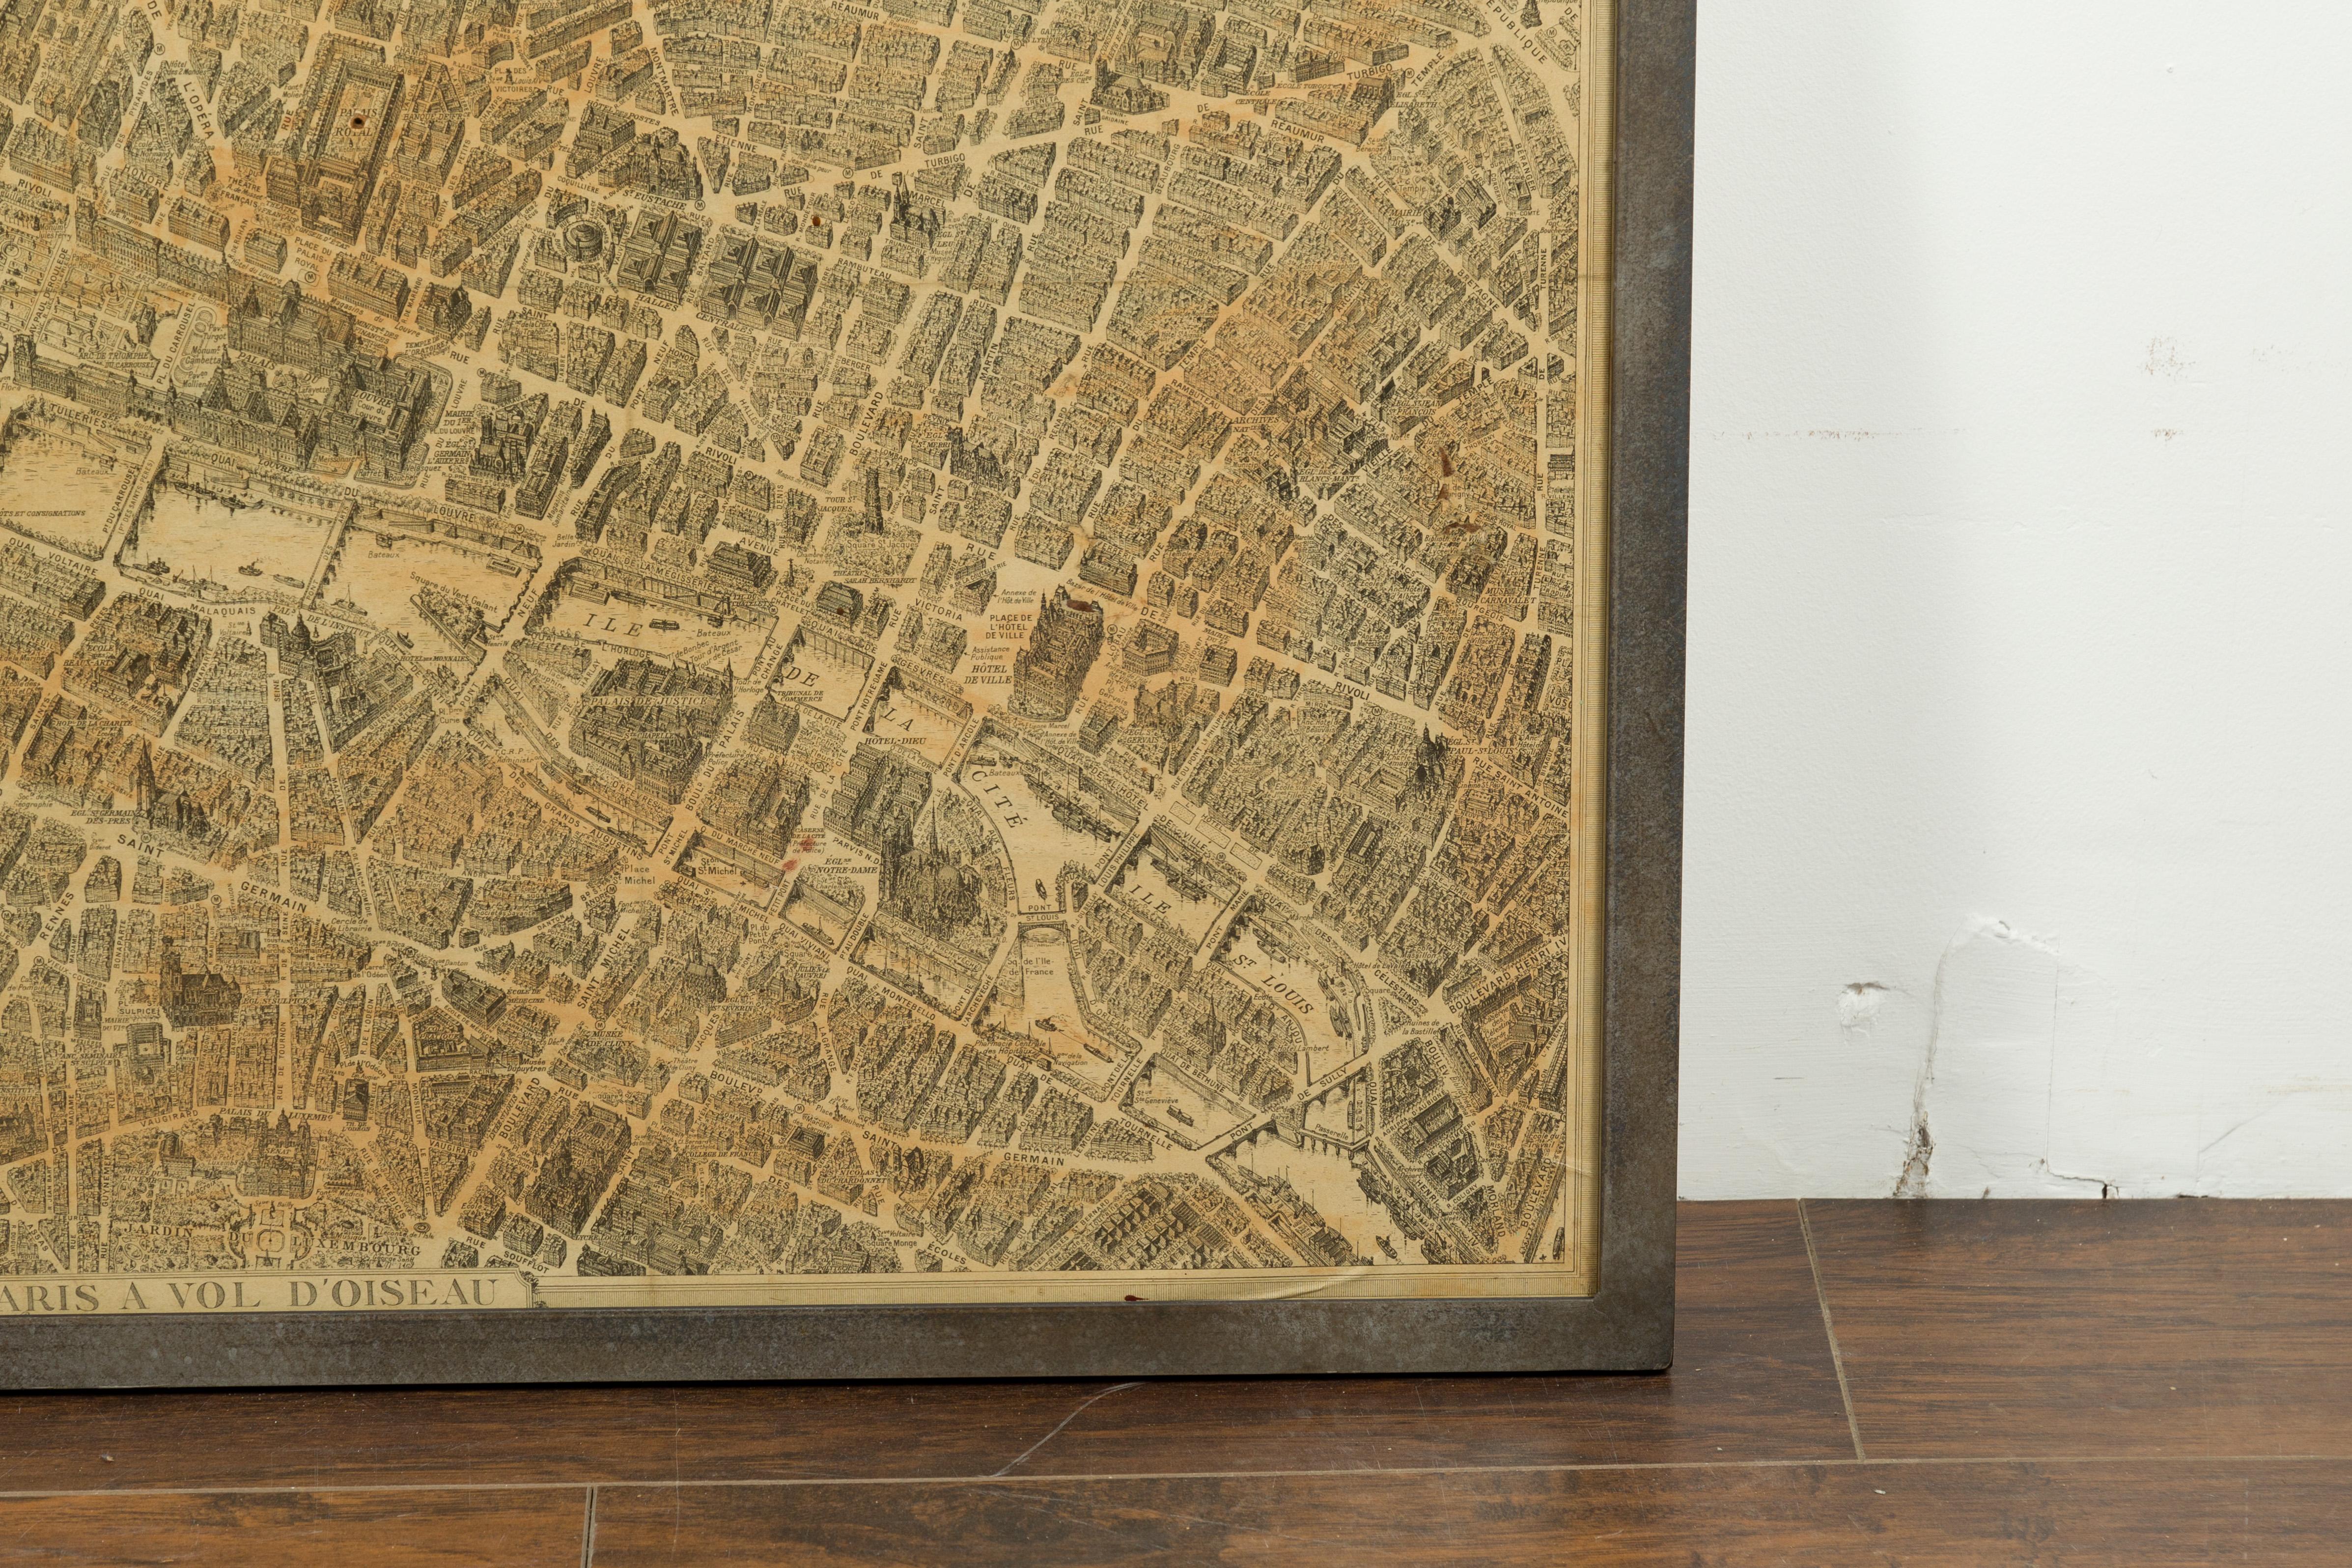 Verre Carte de Paris à Vol d'Oiseau des années 1930 sous verre dans un cadre en fer personnalisé en vente